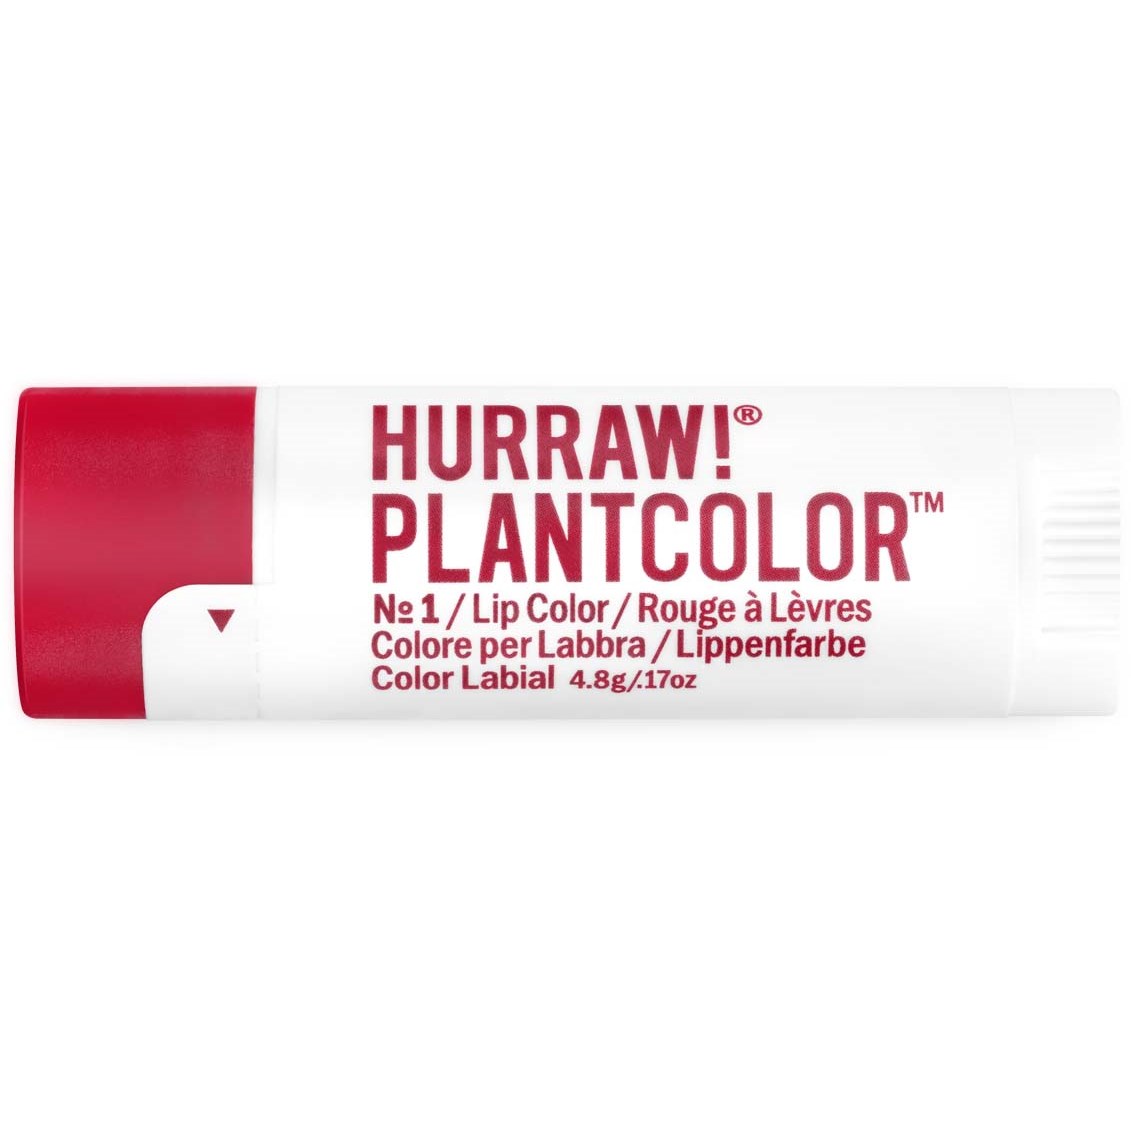 Hurraw! Plantcolor Lip Color No 1